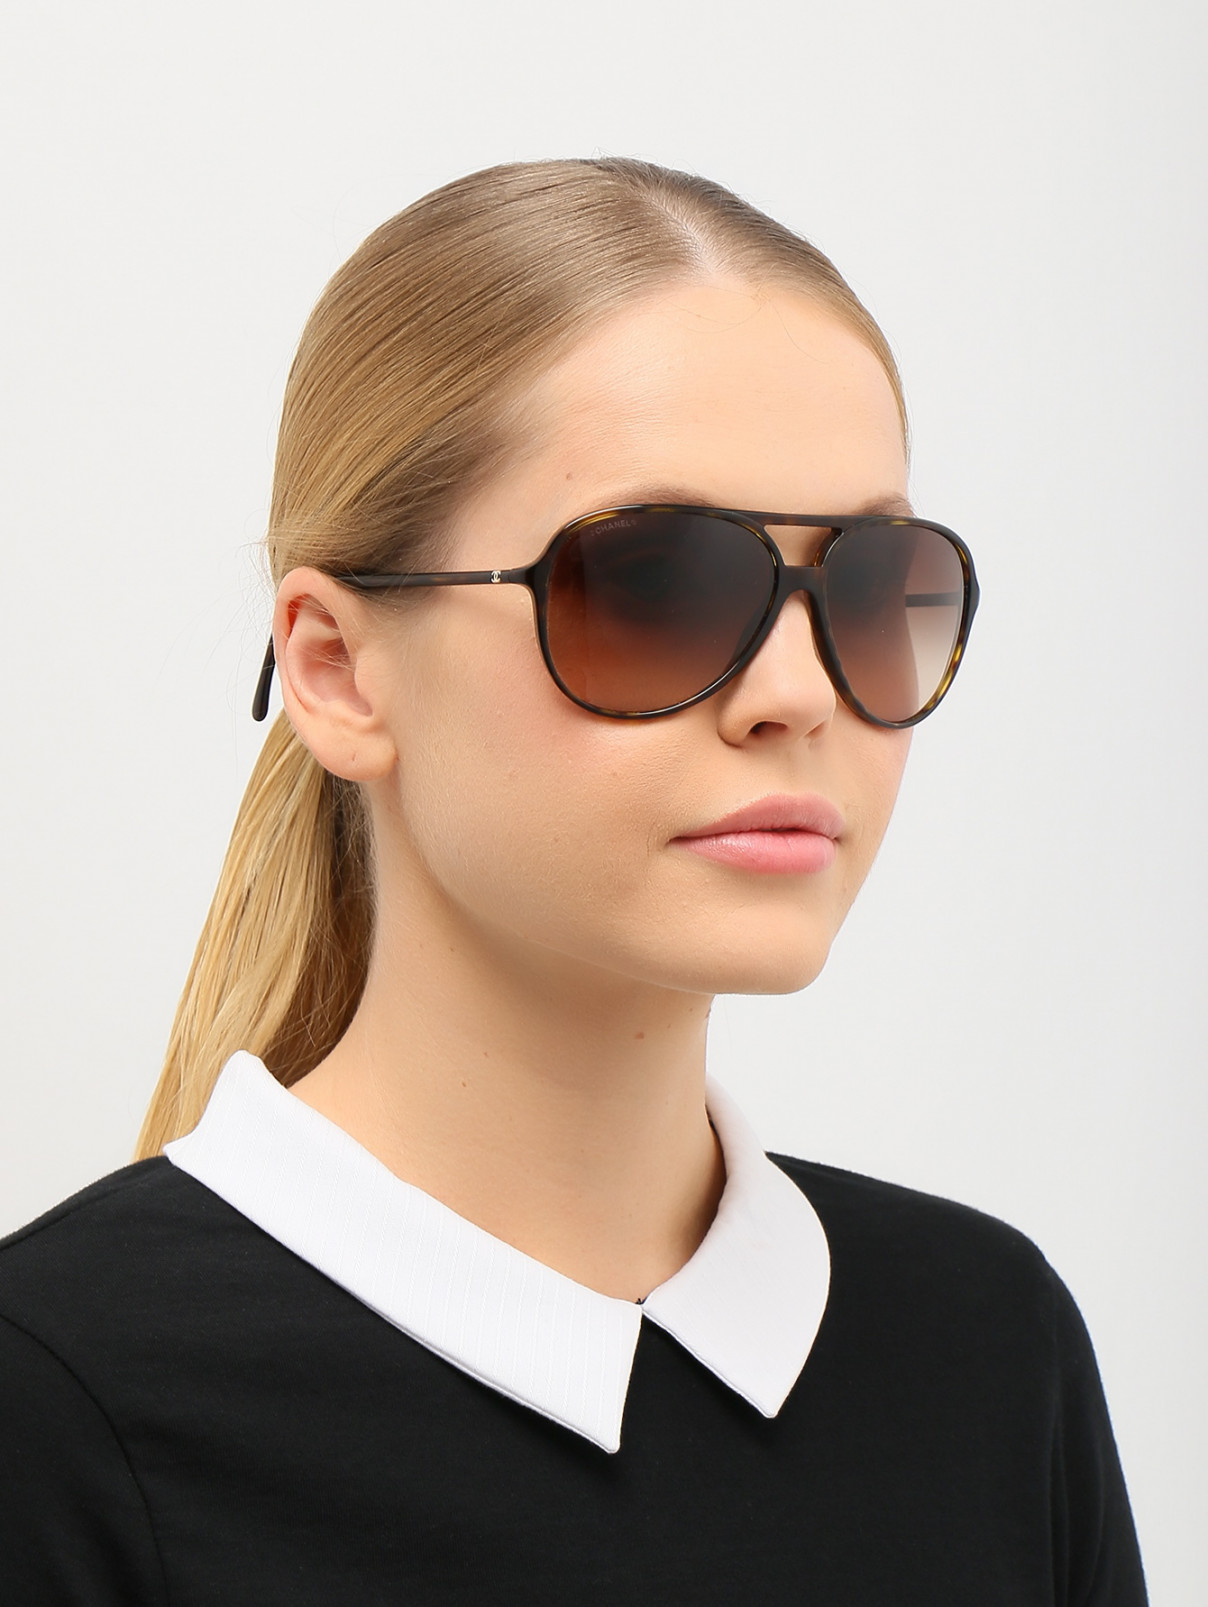 Солнцезащитные очки "авиаторы" в роговой оправе Chanel  –  Модель Общий вид  – Цвет:  Коричневый